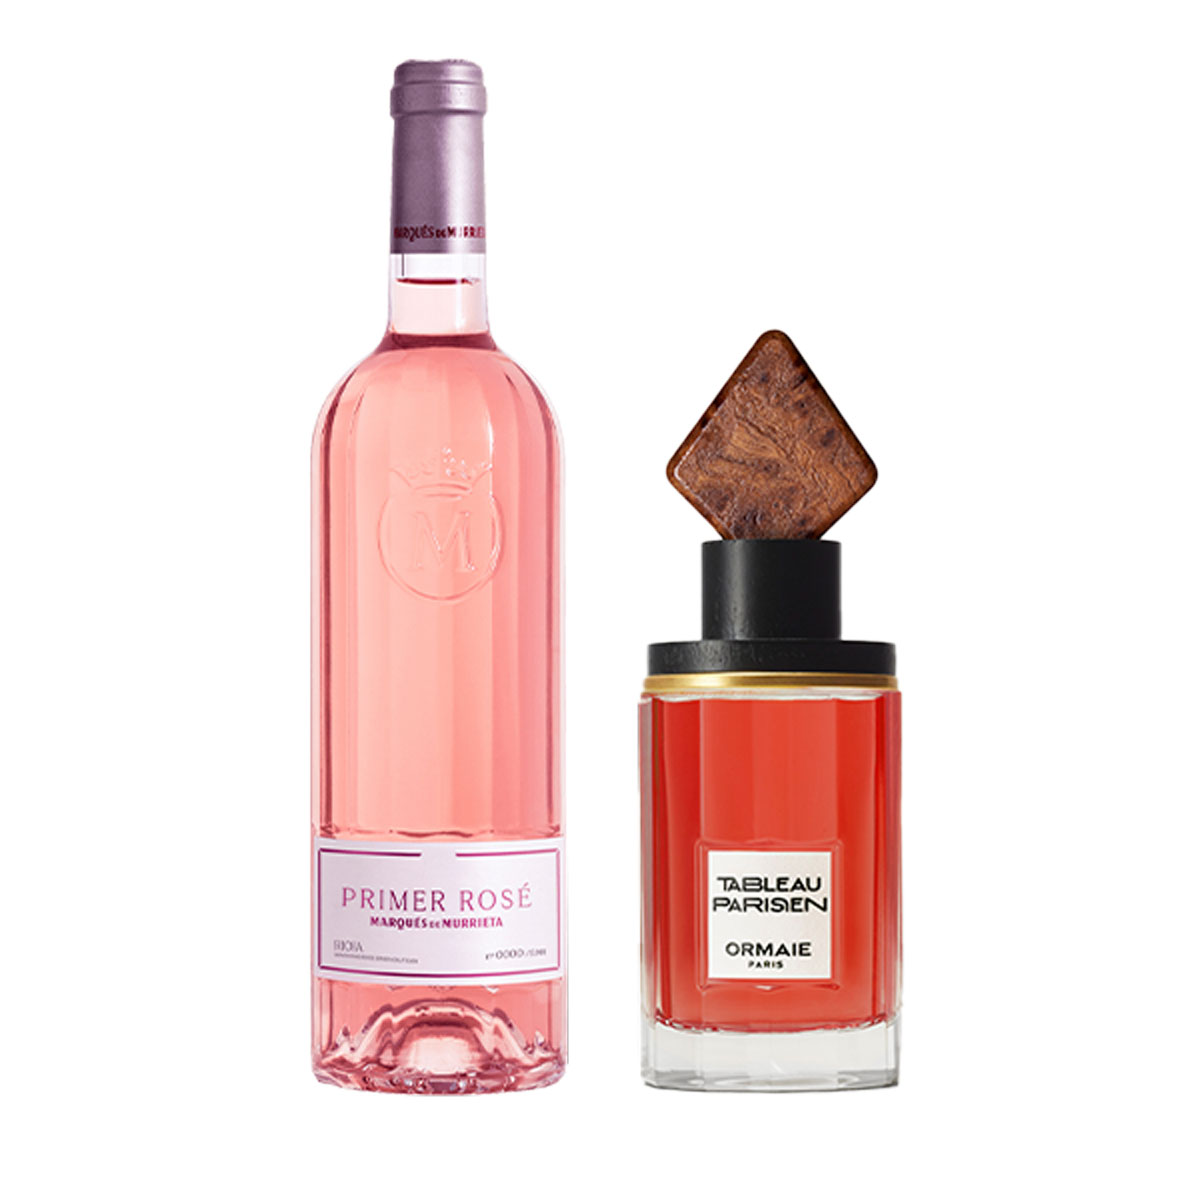 Roséwein und Parfumflakon